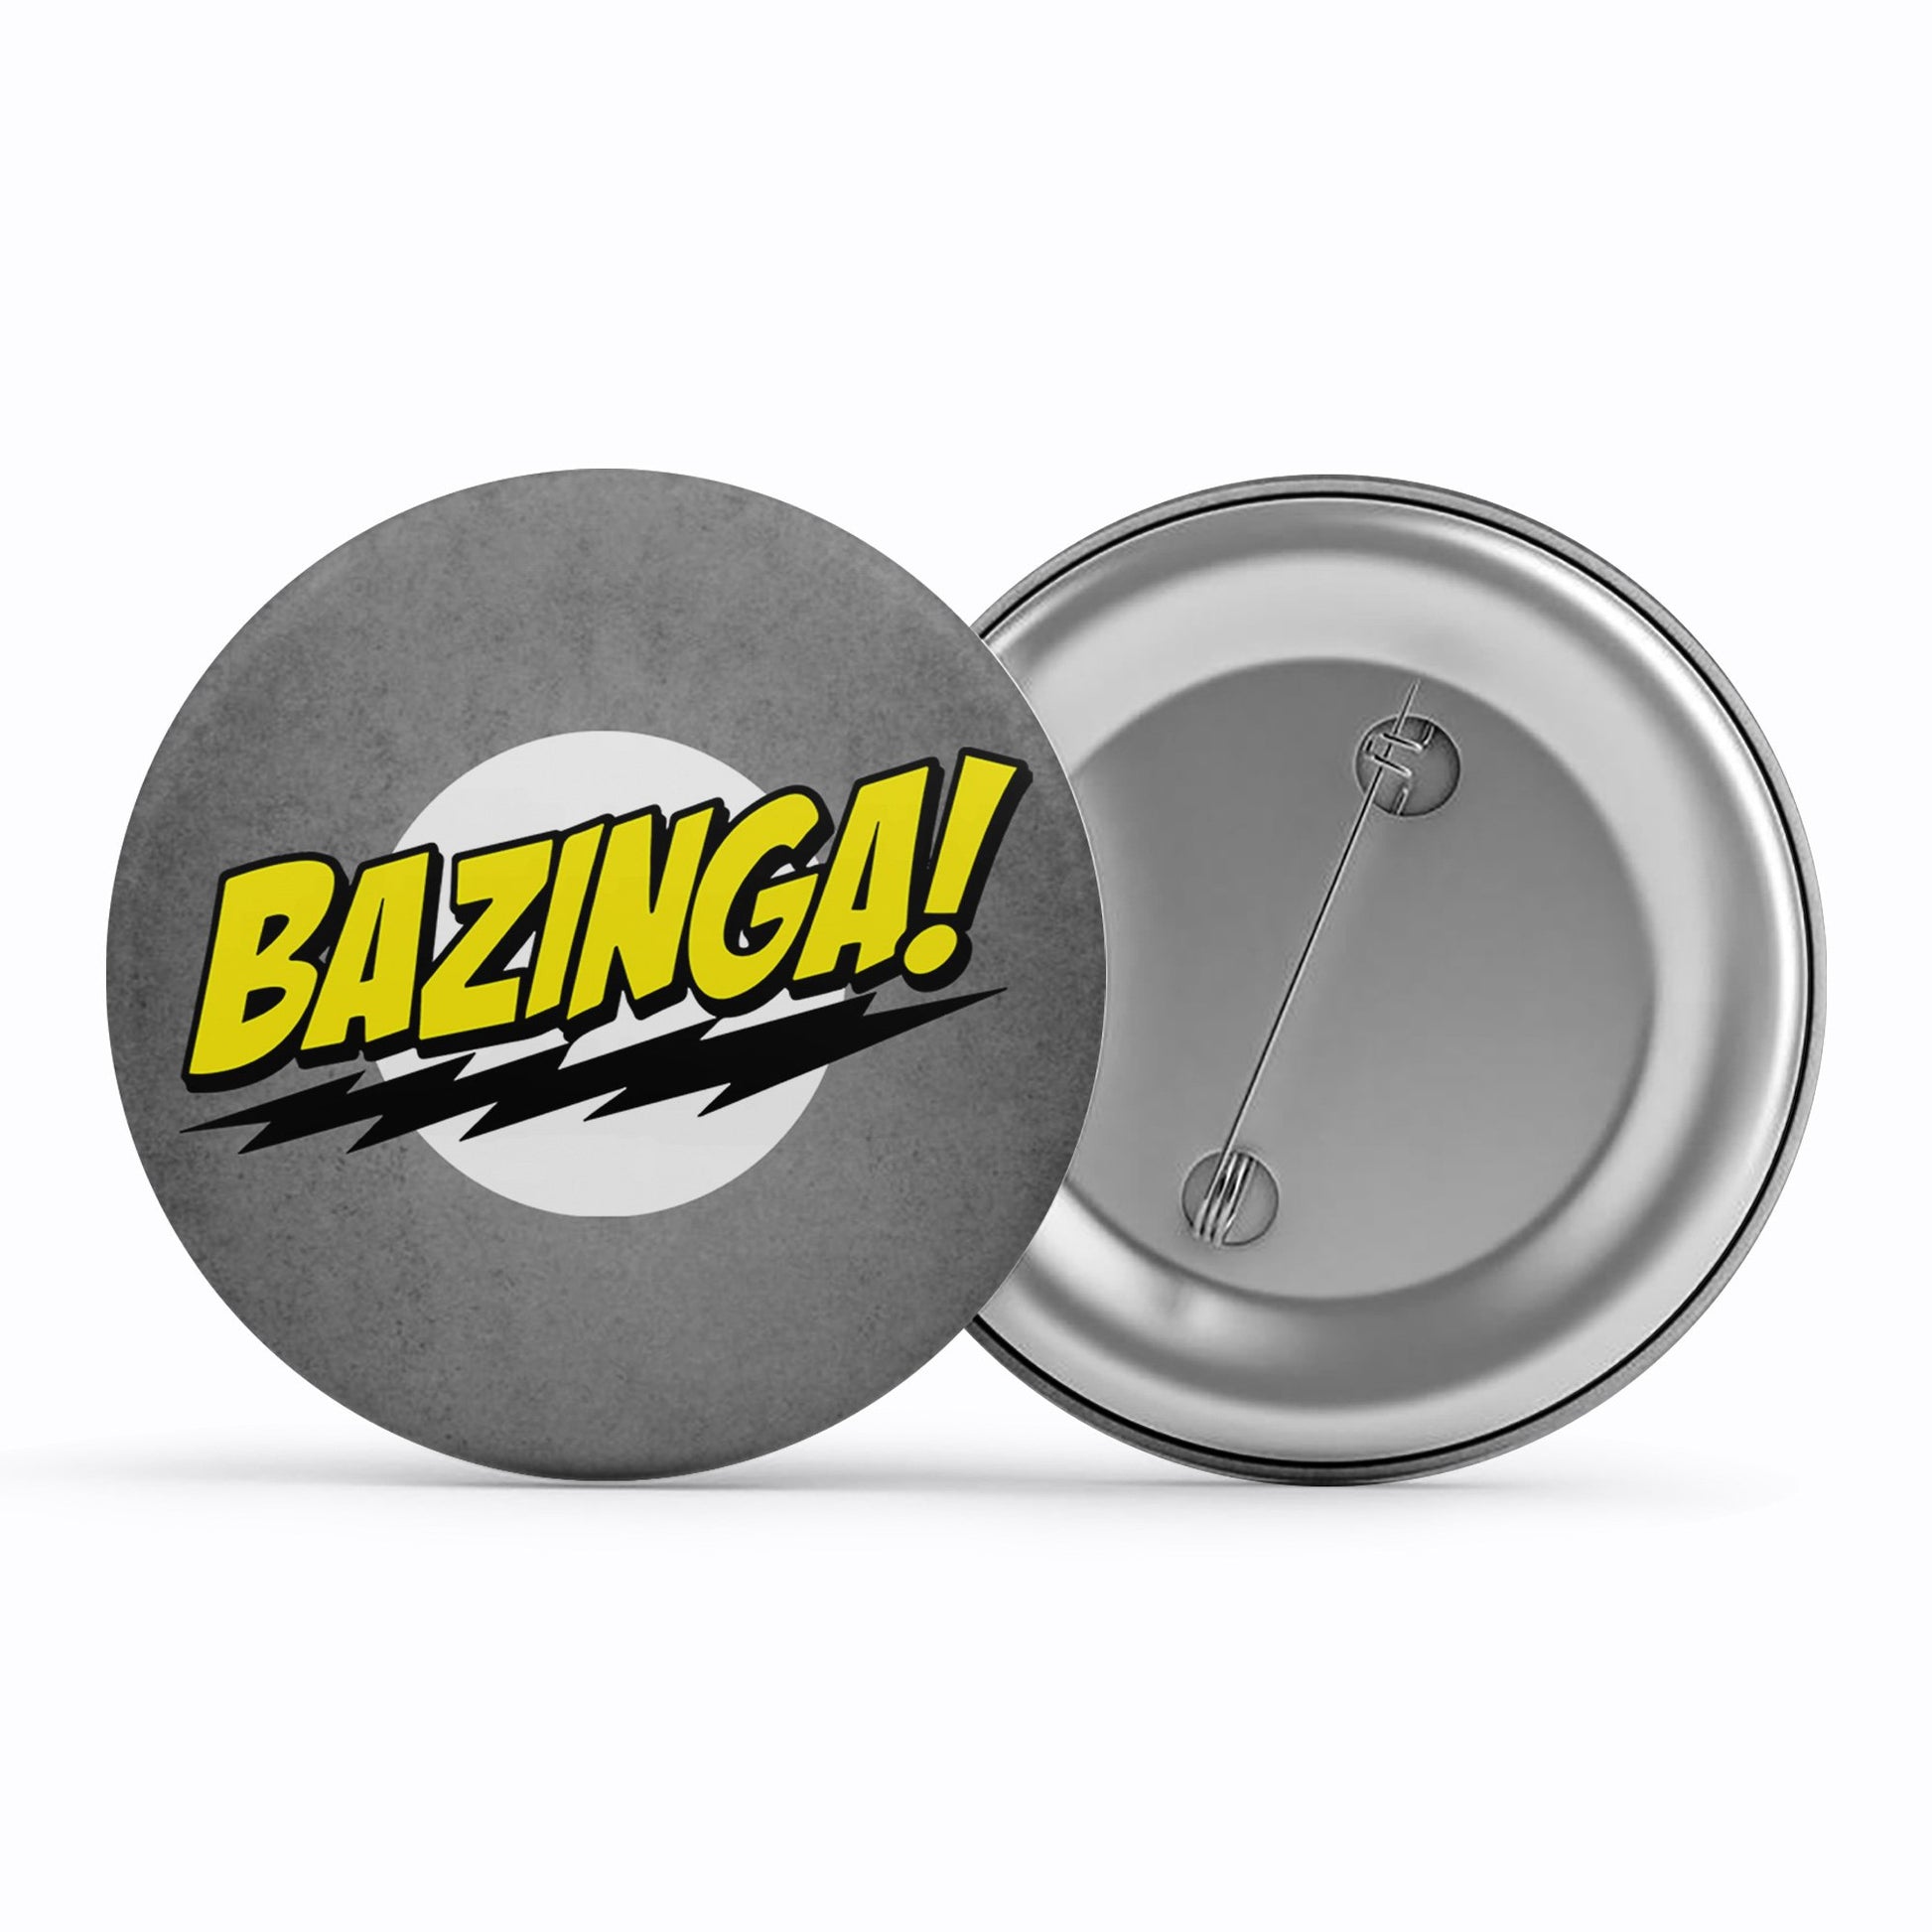 The Big Bang Theory Badge - Bazinga Metal Pin Button The Banyan Tee TBT